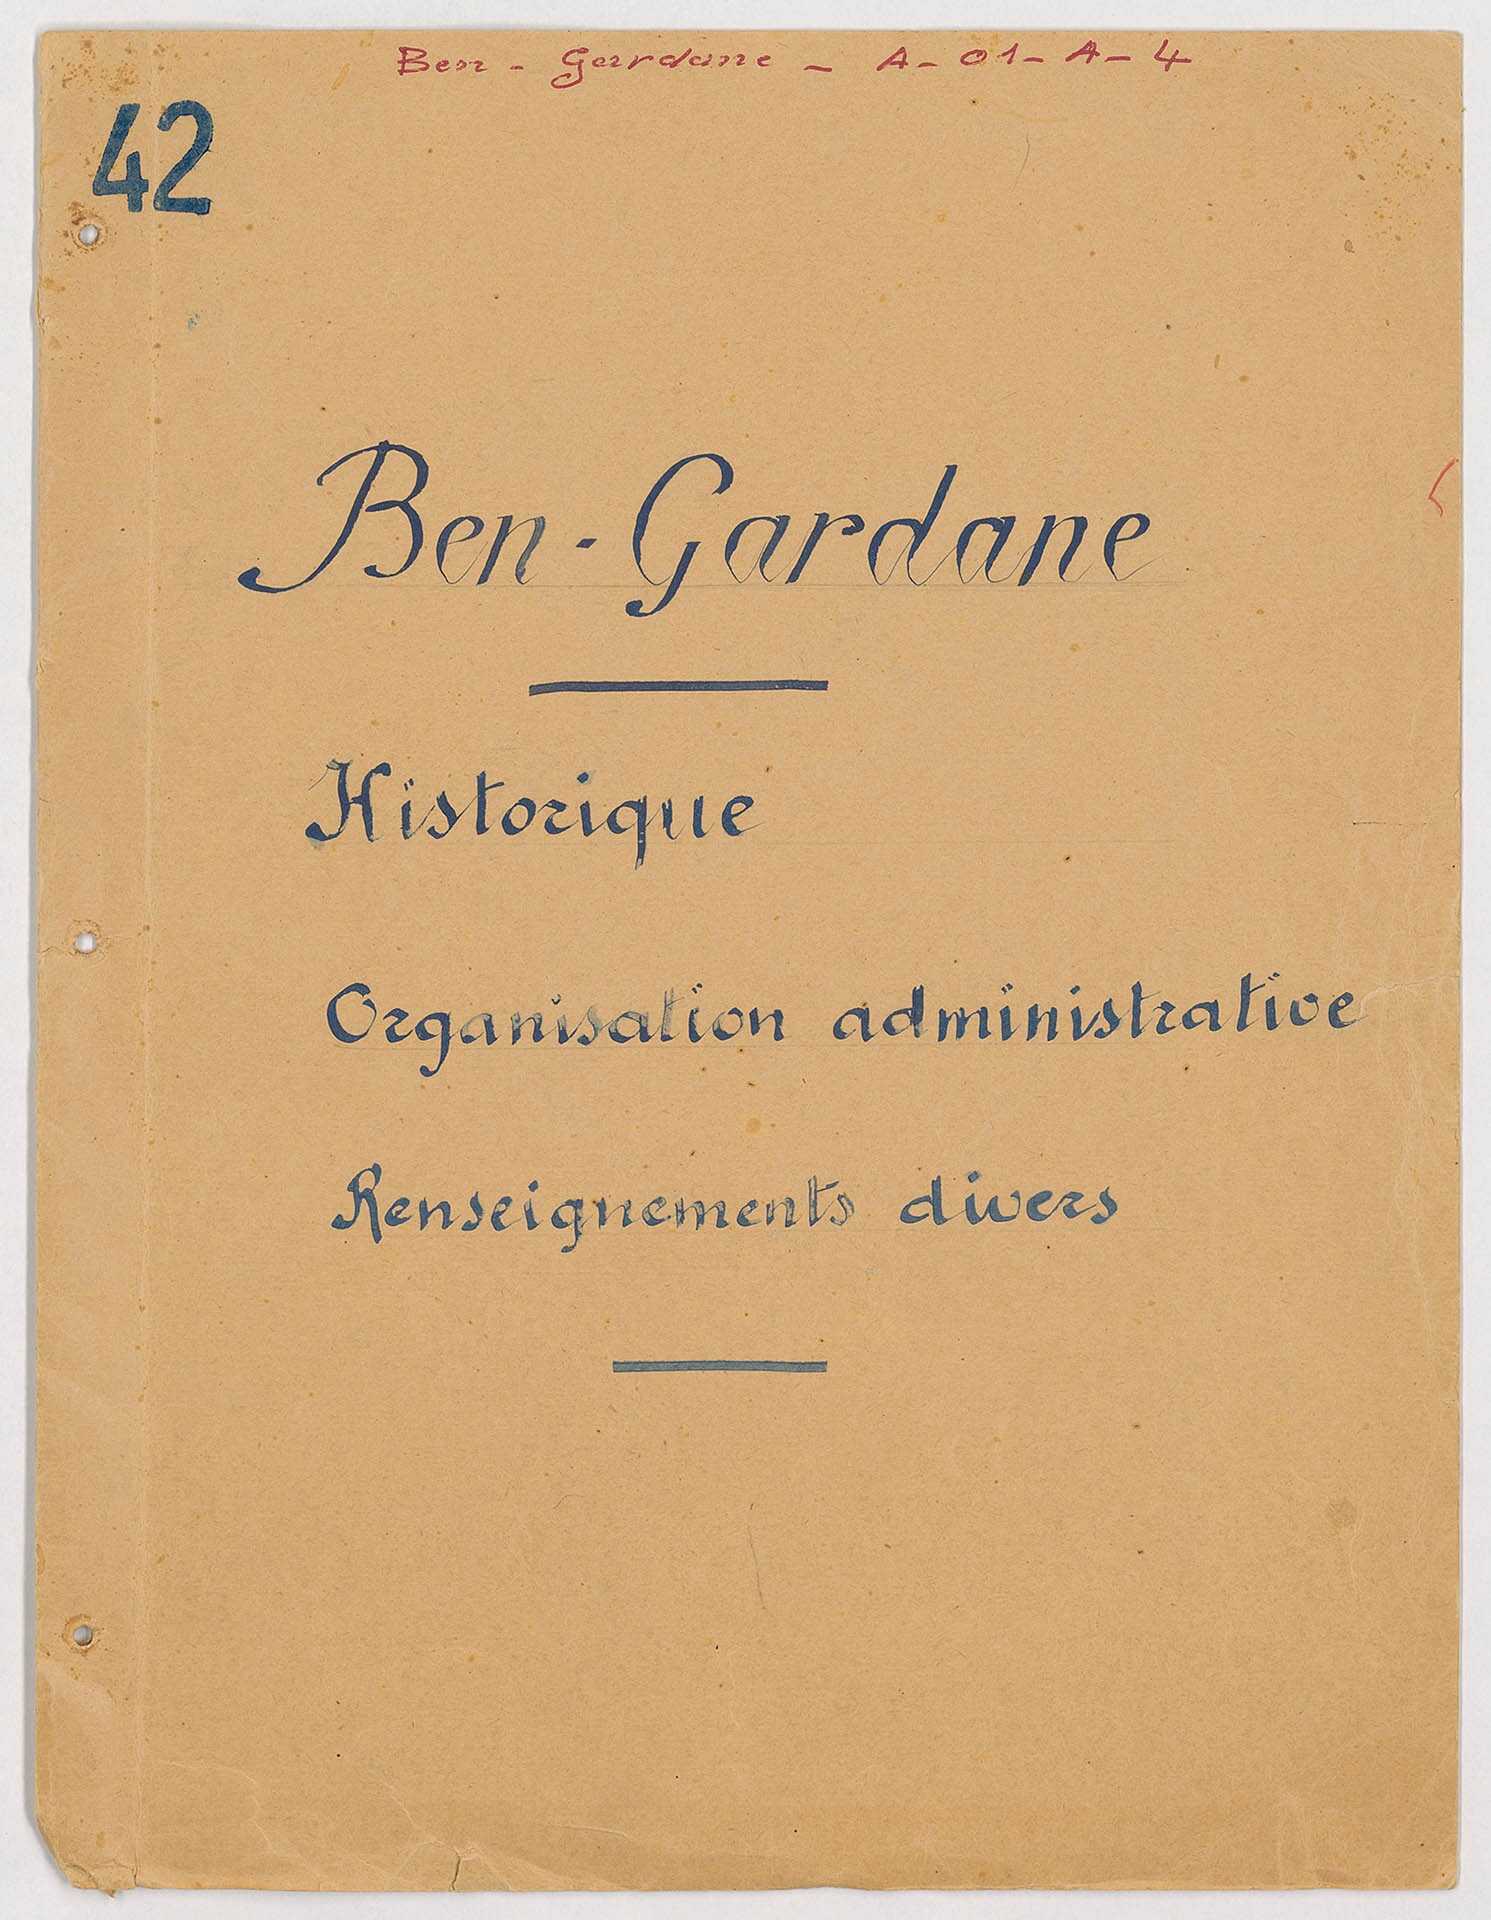 [Bureau des affaires de Ben Gardane], Historique, organisation administrative et renseignements divers, 22 f., carte jointe.